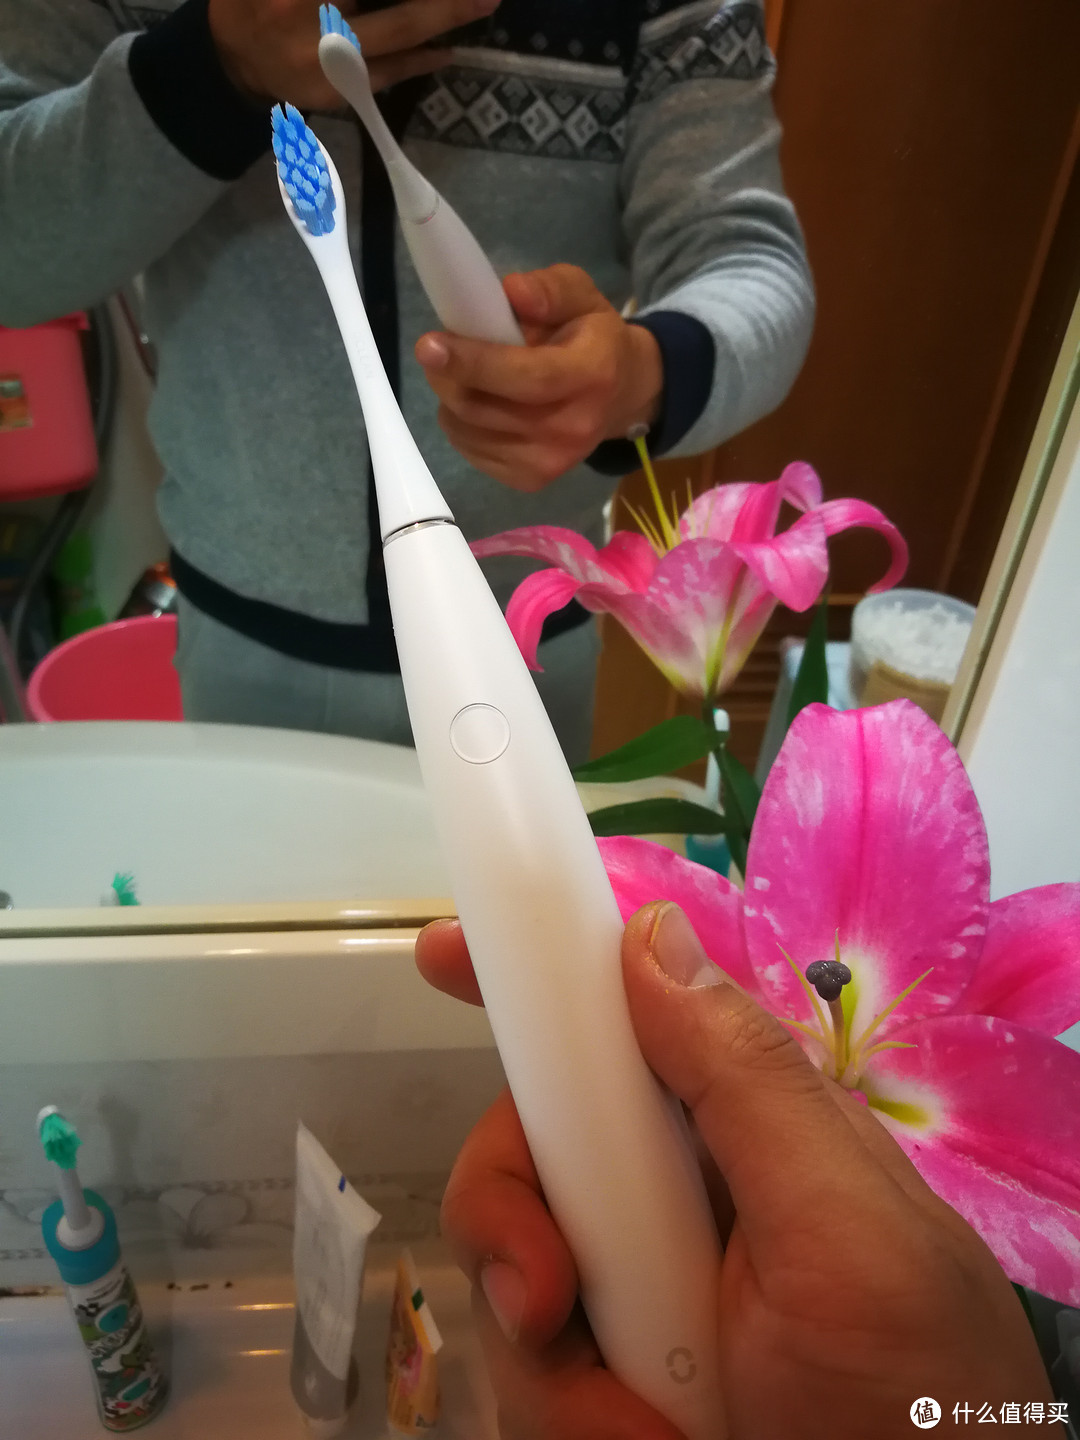 声波电动牙刷进入智能时代——Oclean SE青春版电动牙刷轻测